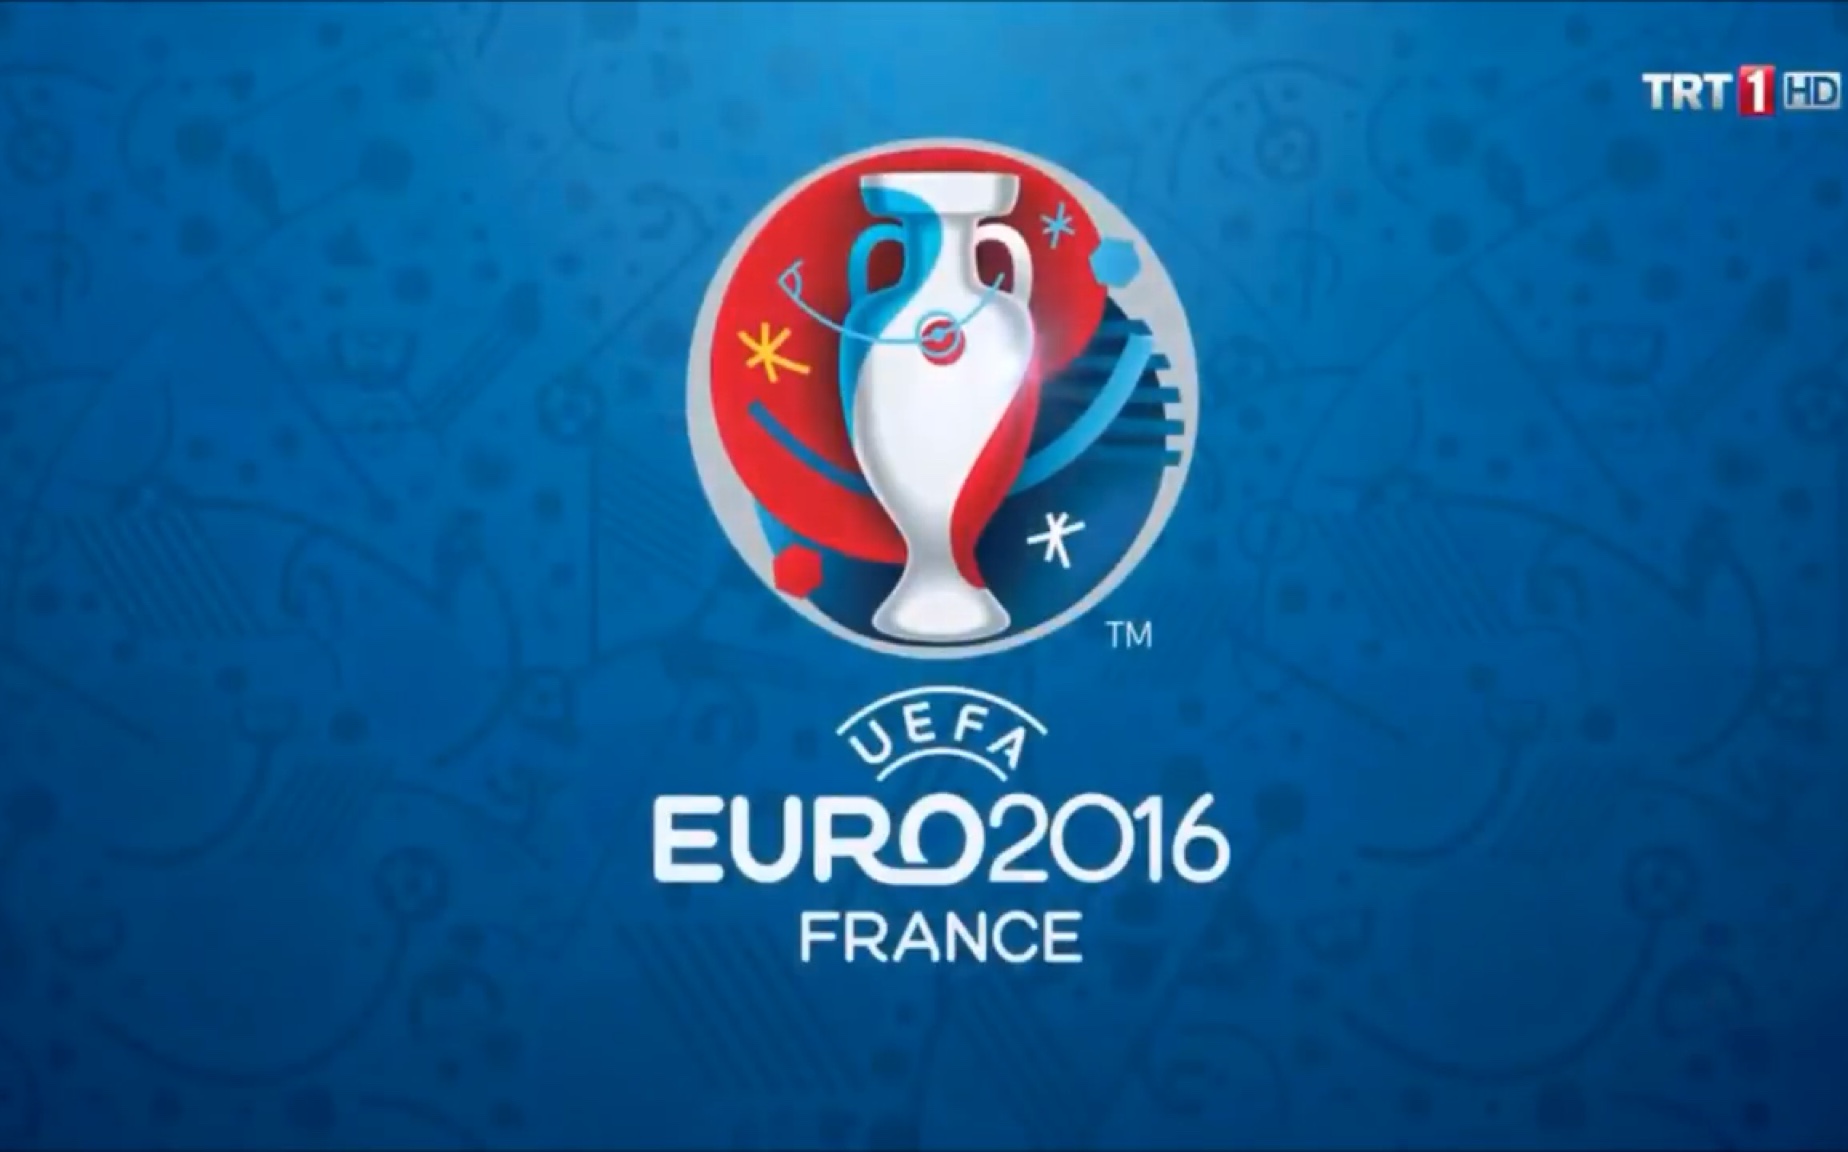 如何看待 2016 年欧洲杯半决赛法国 2:0 击败德国？ - 知乎